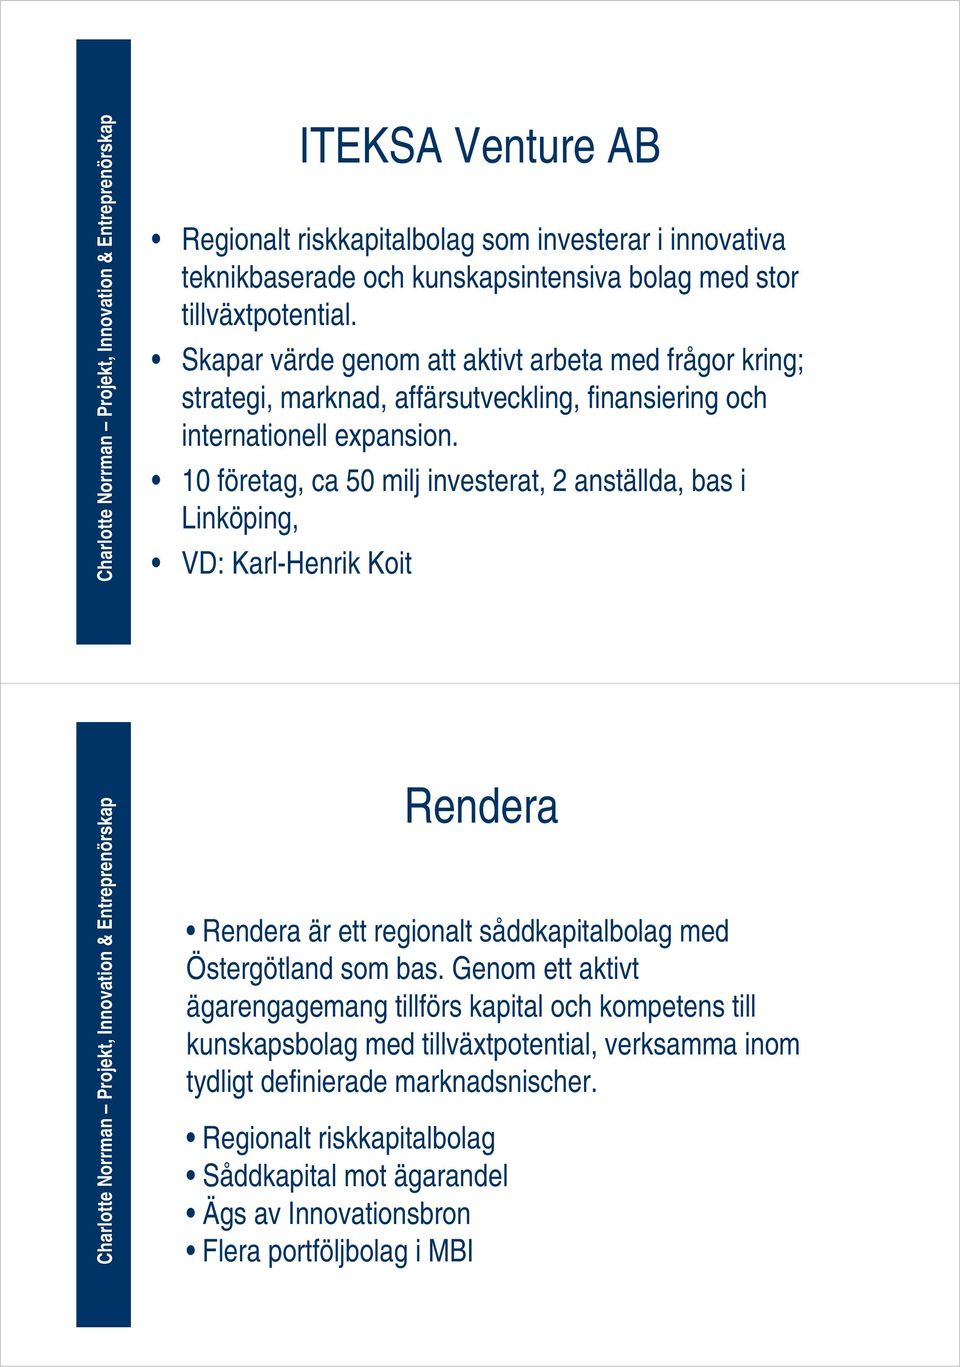 10 företag, ca 50 milj investerat, 2 anställda, bas i Linköping, VD: Karl-Henrik Koit Rendera Rendera är ett regionalt såddkapitalbolag med Östergötland som bas.